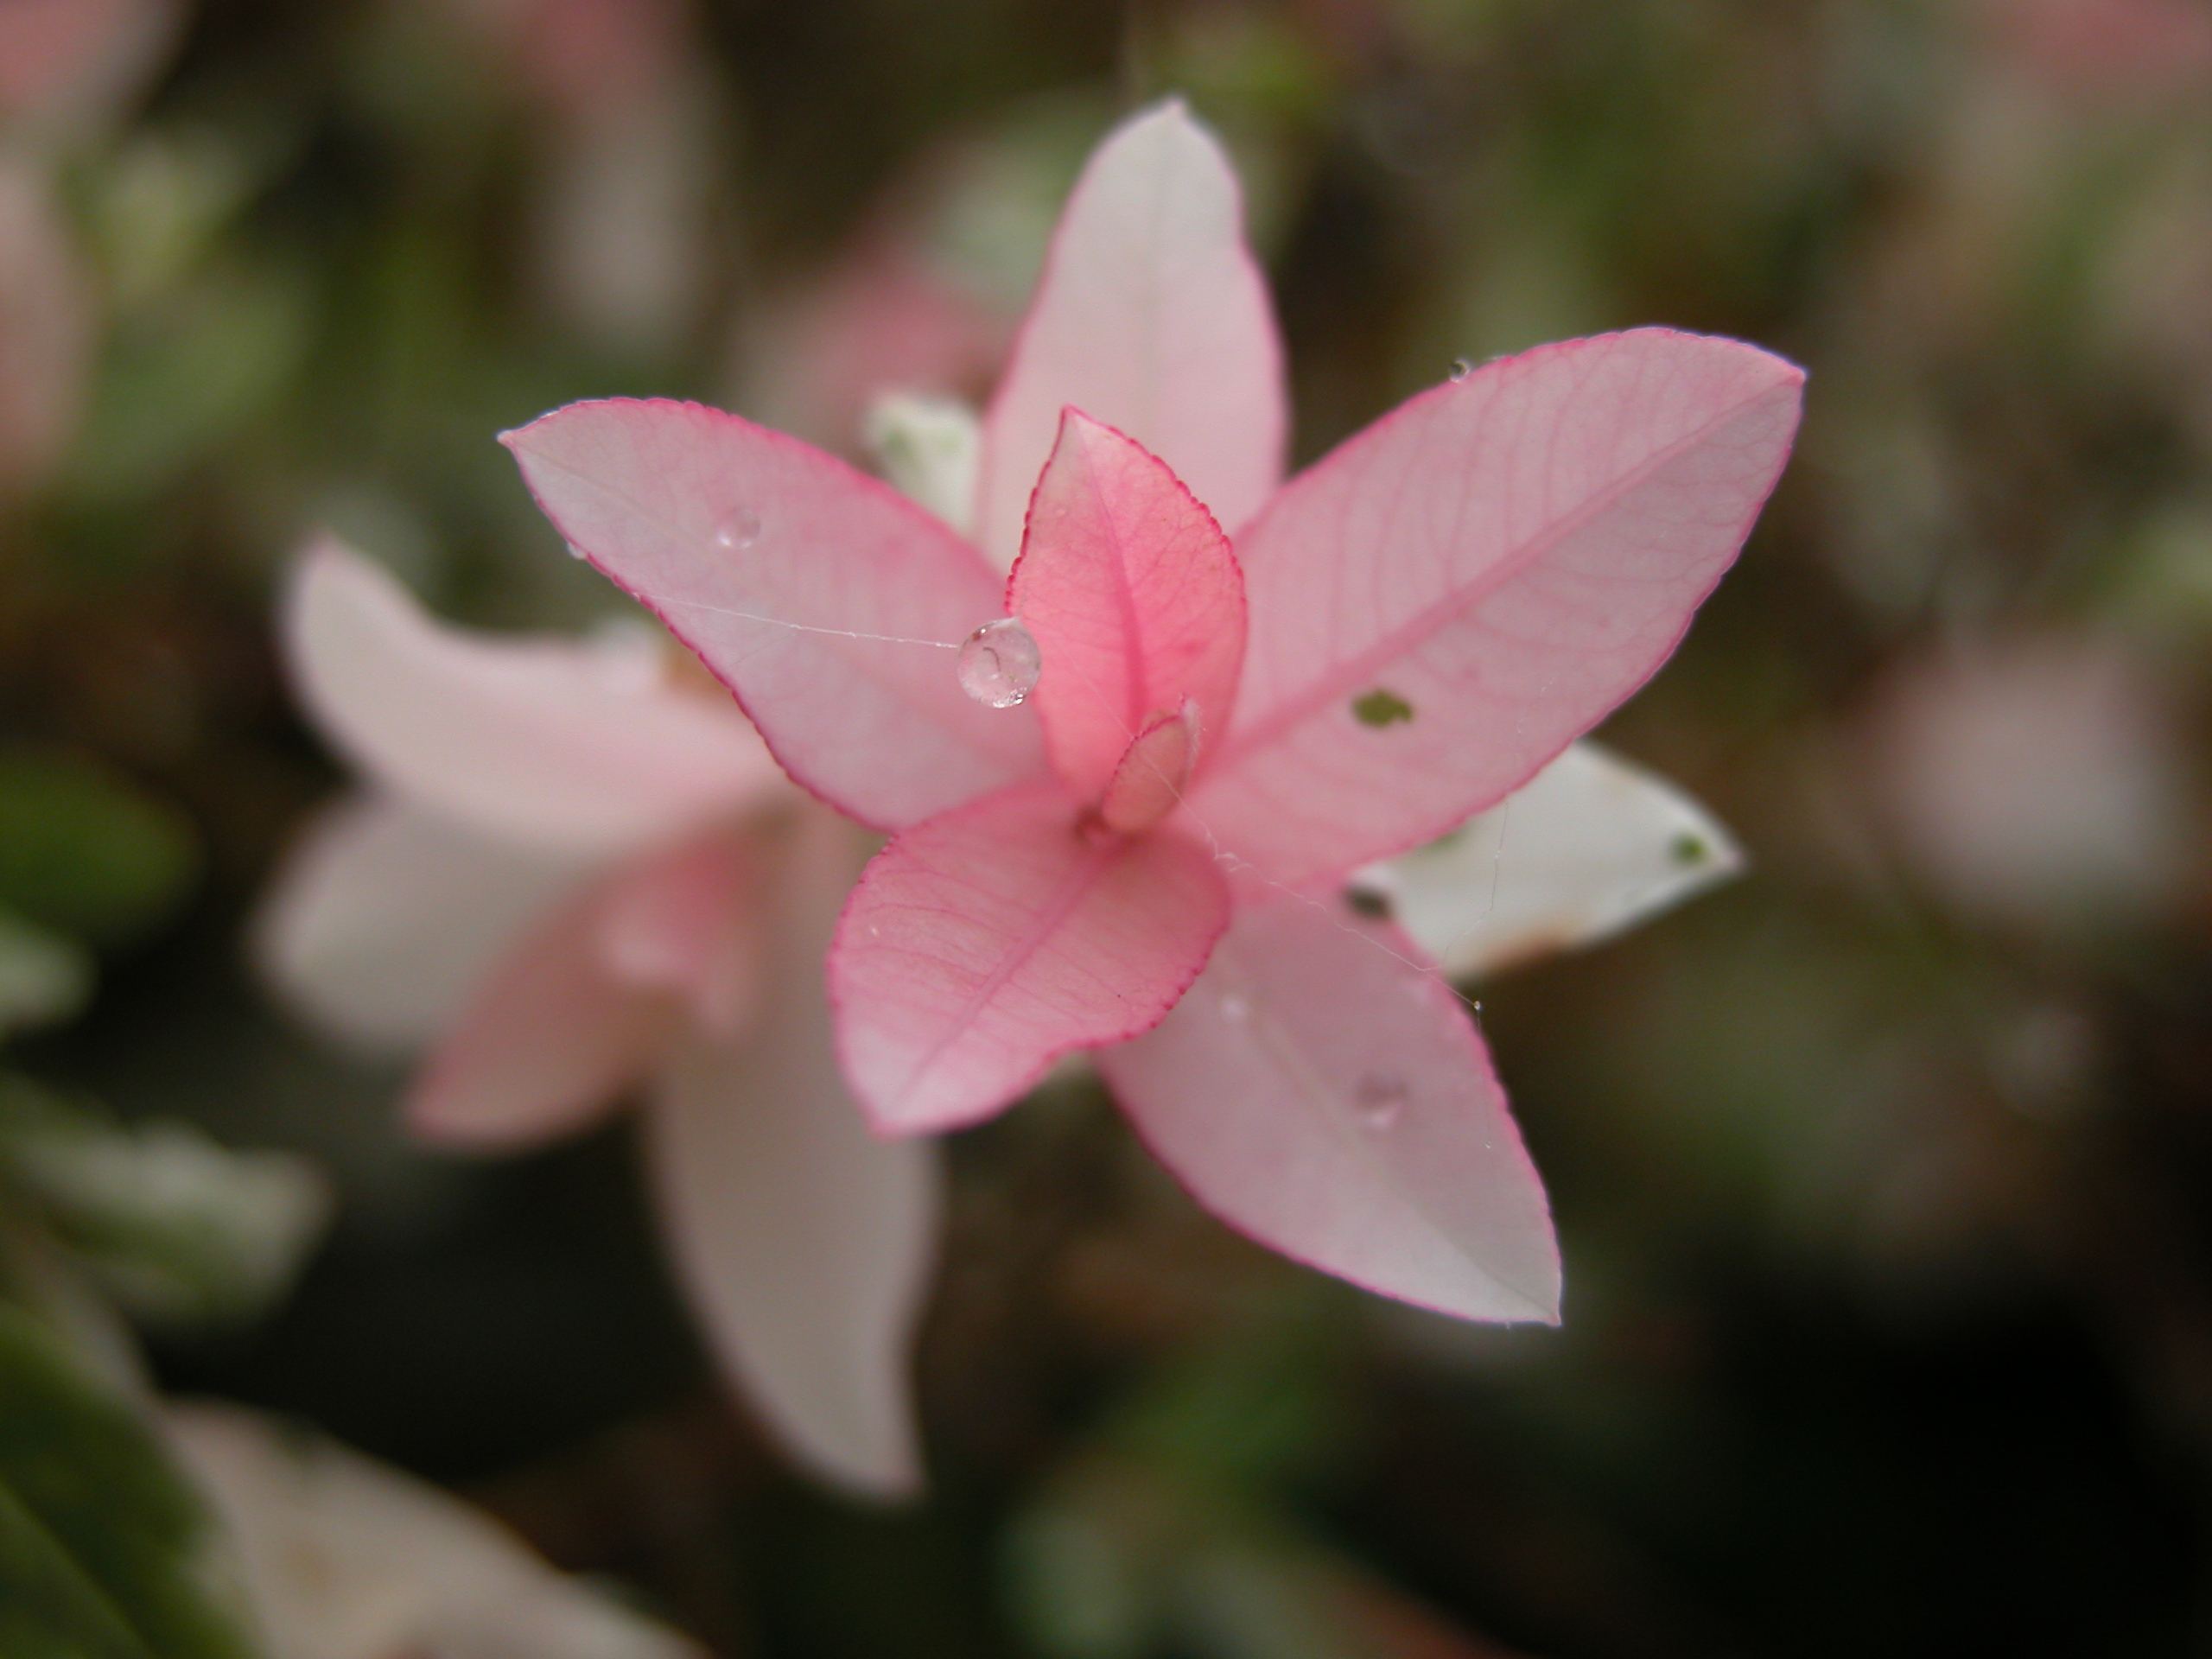 Image*After : images : flower spring pink petal petals love lovely ...